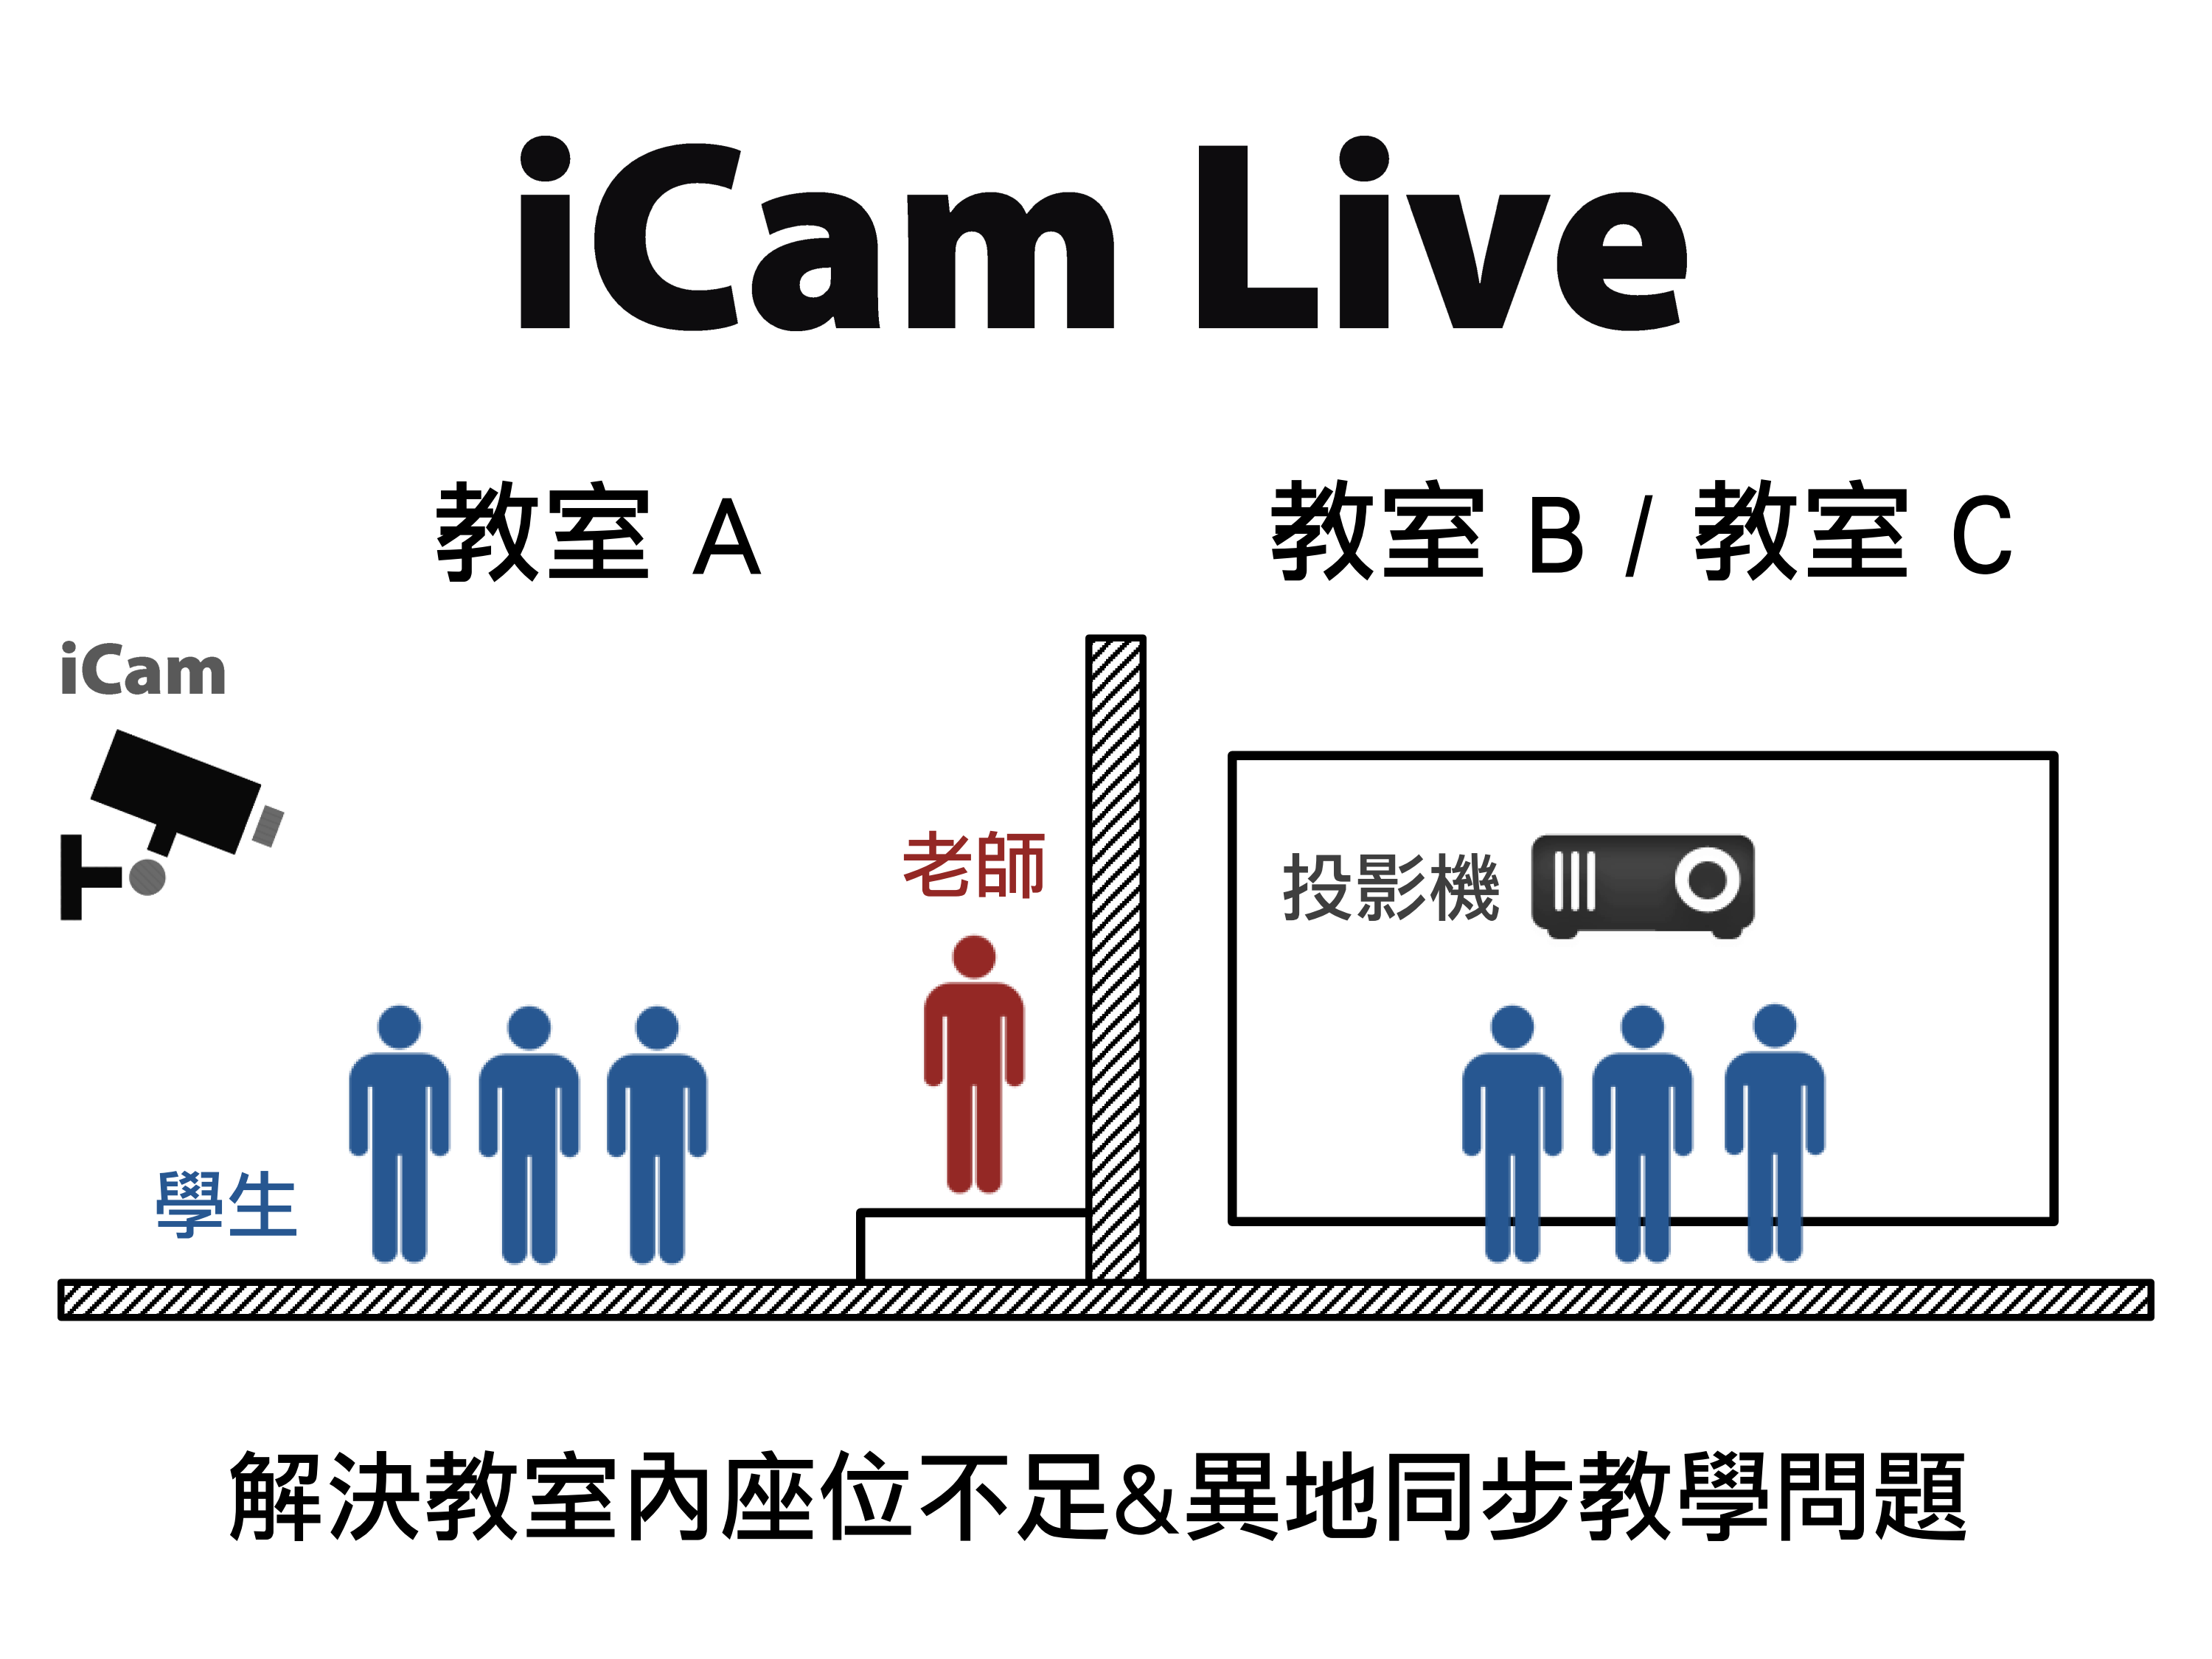 蓝眼科技提供免费的iCam Live现场直播软件给教育单位